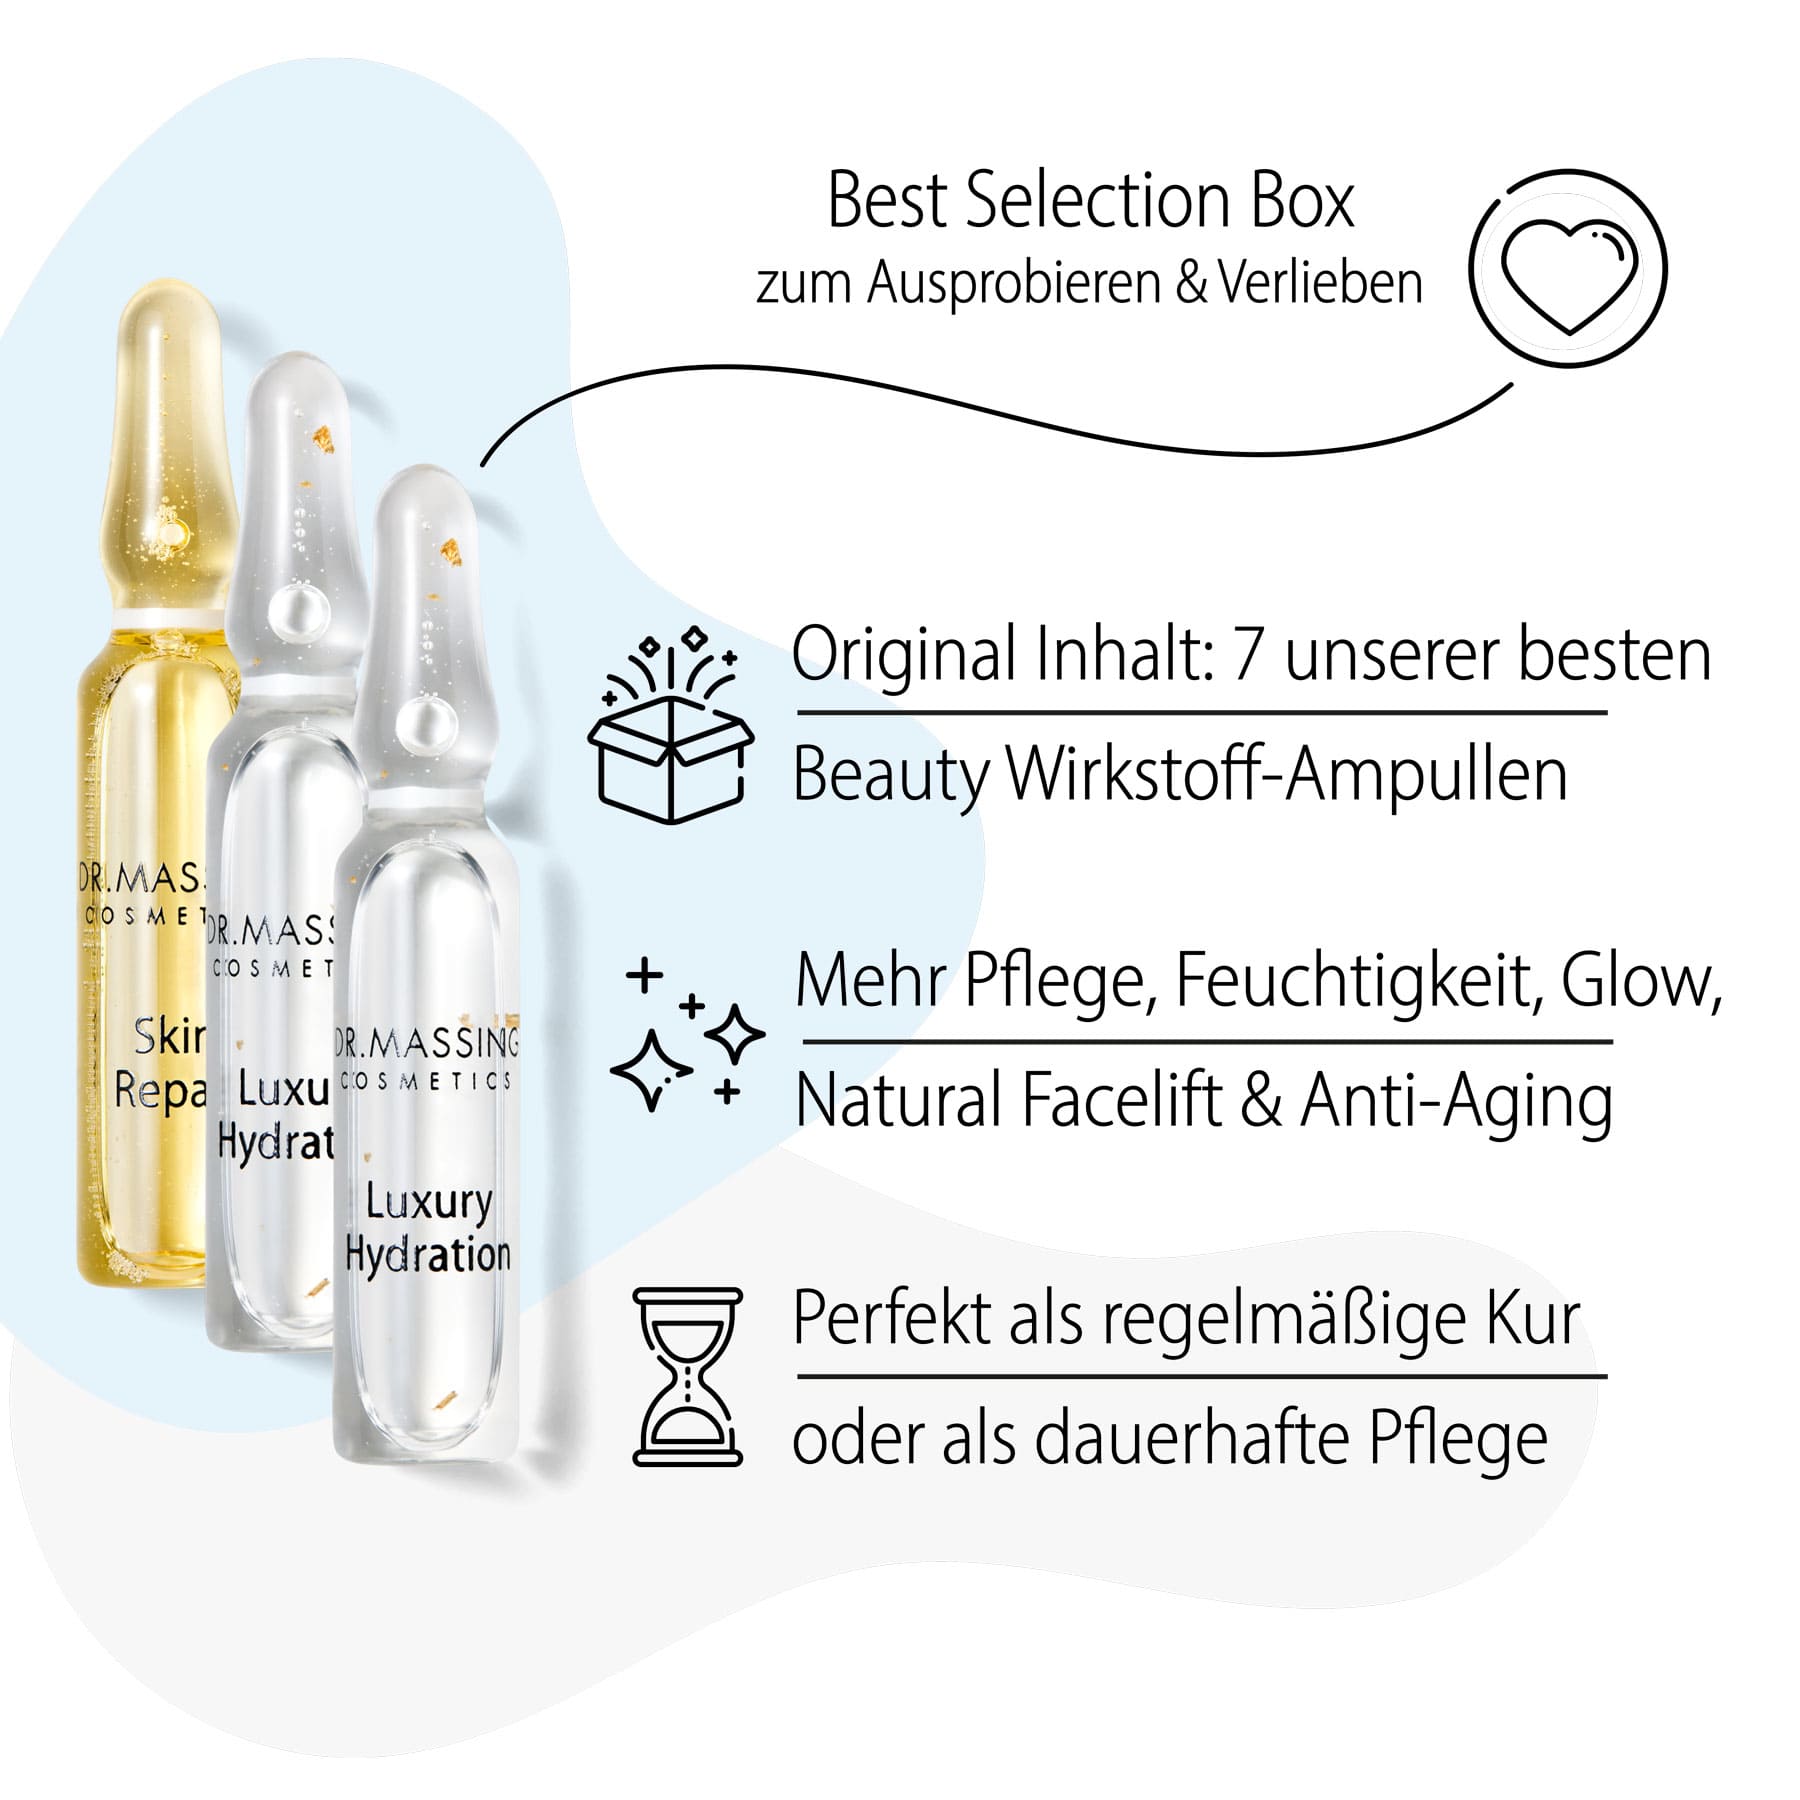 Dr. Massing Best Selection Ampullen 7 Tage Probierbox Wirkstoff Ampullen für mehr Pflege, Glow, Feuchtigkeit und Anti-Aging Details Vorteile 02